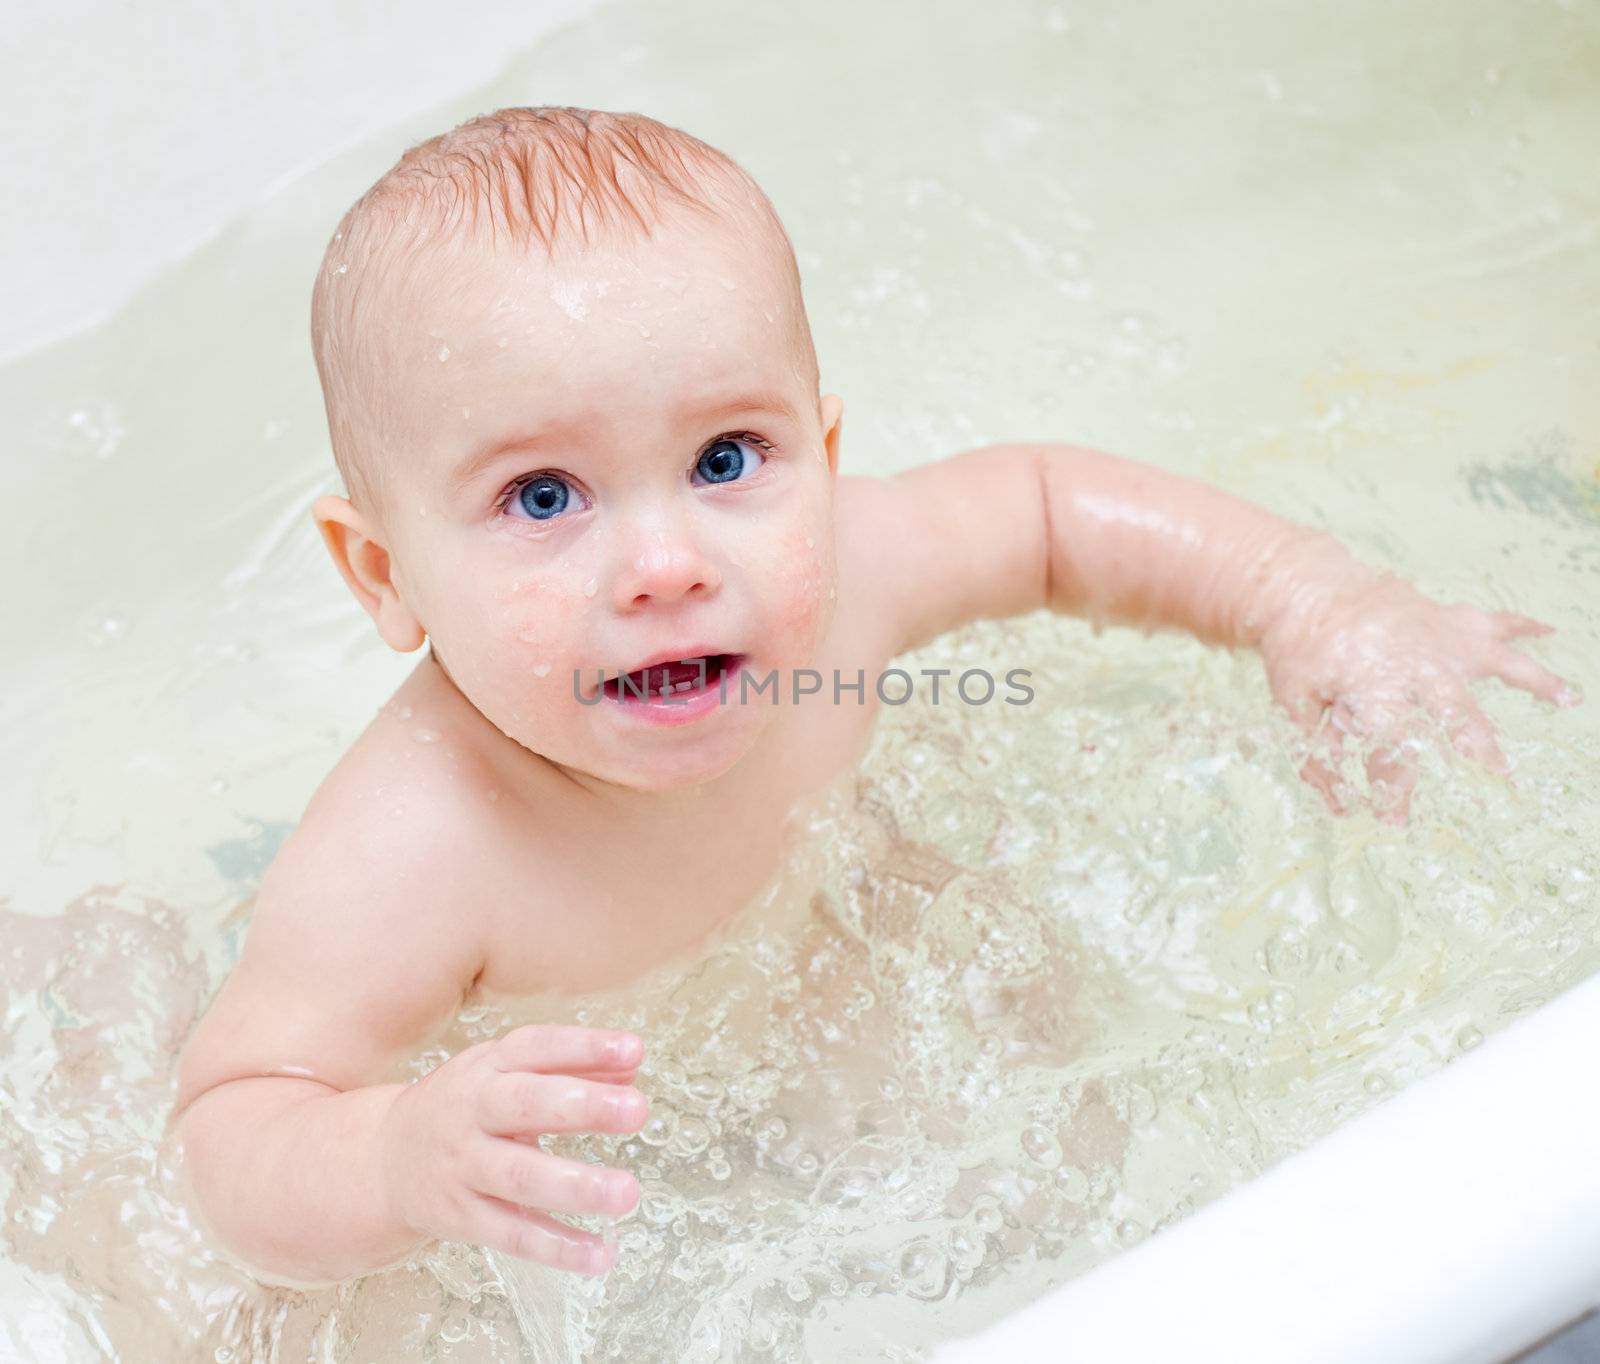 Cute little baby girl bathing